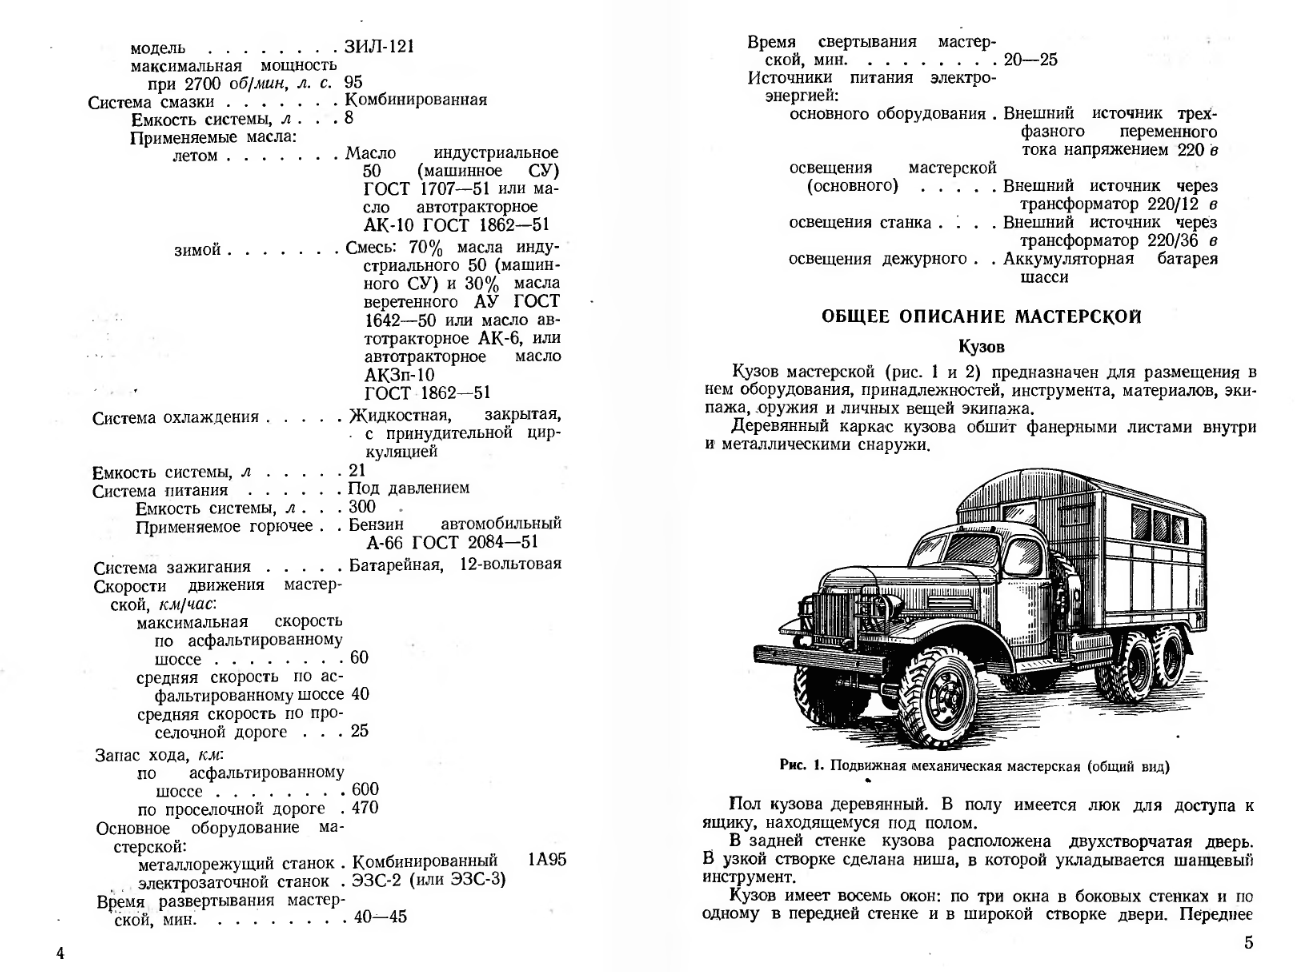 ПММ. Руководство по подвижной механической мастерской . 1957